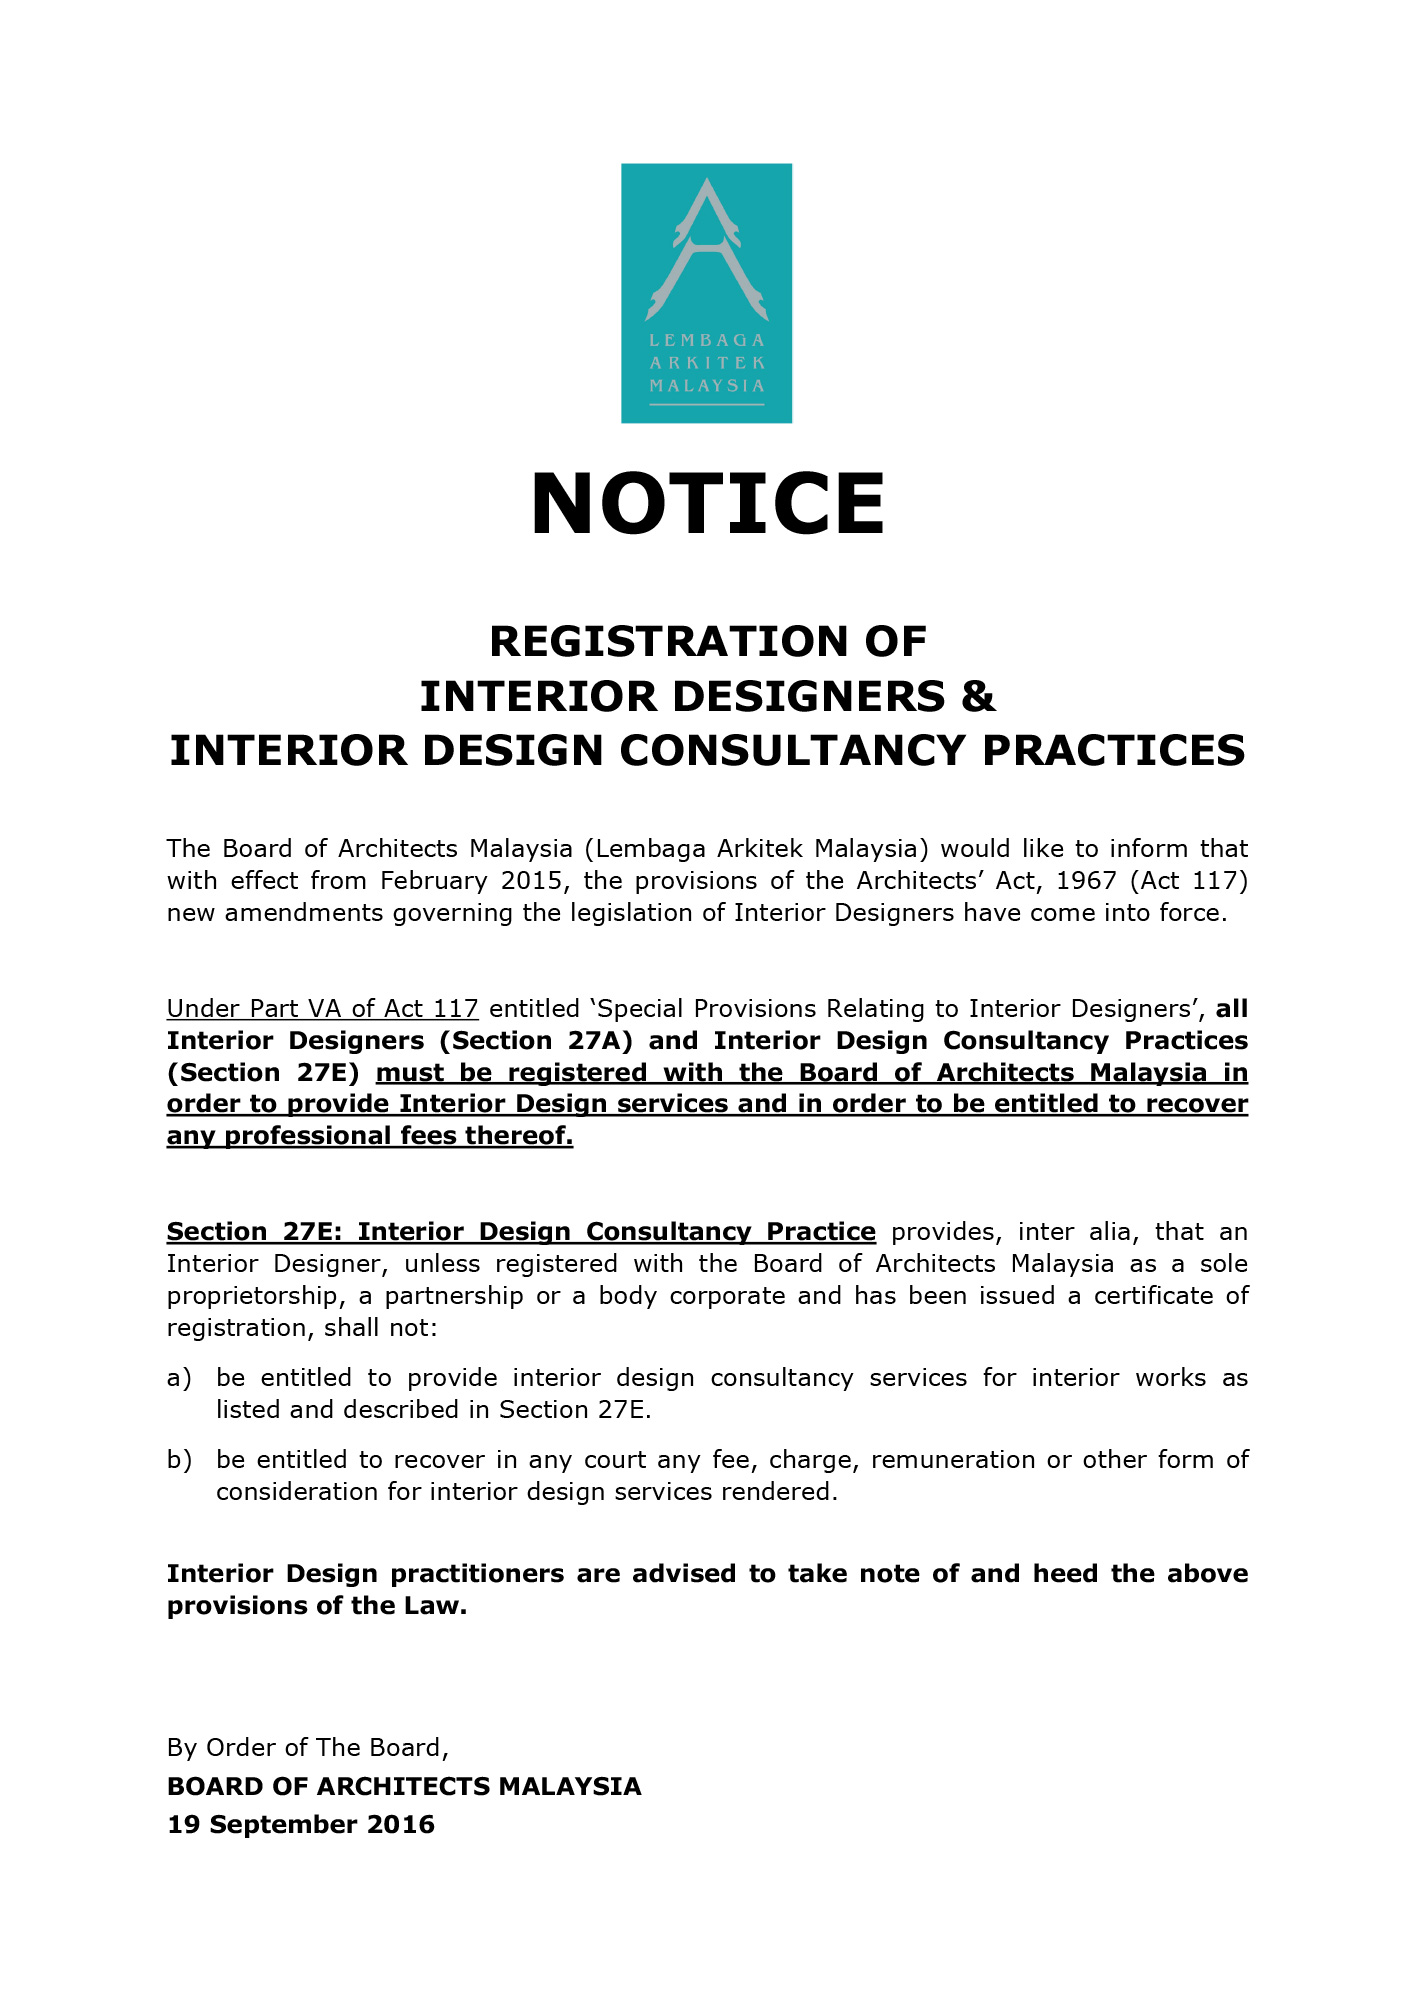 Miid Registration Of Interior Designers Interior Design